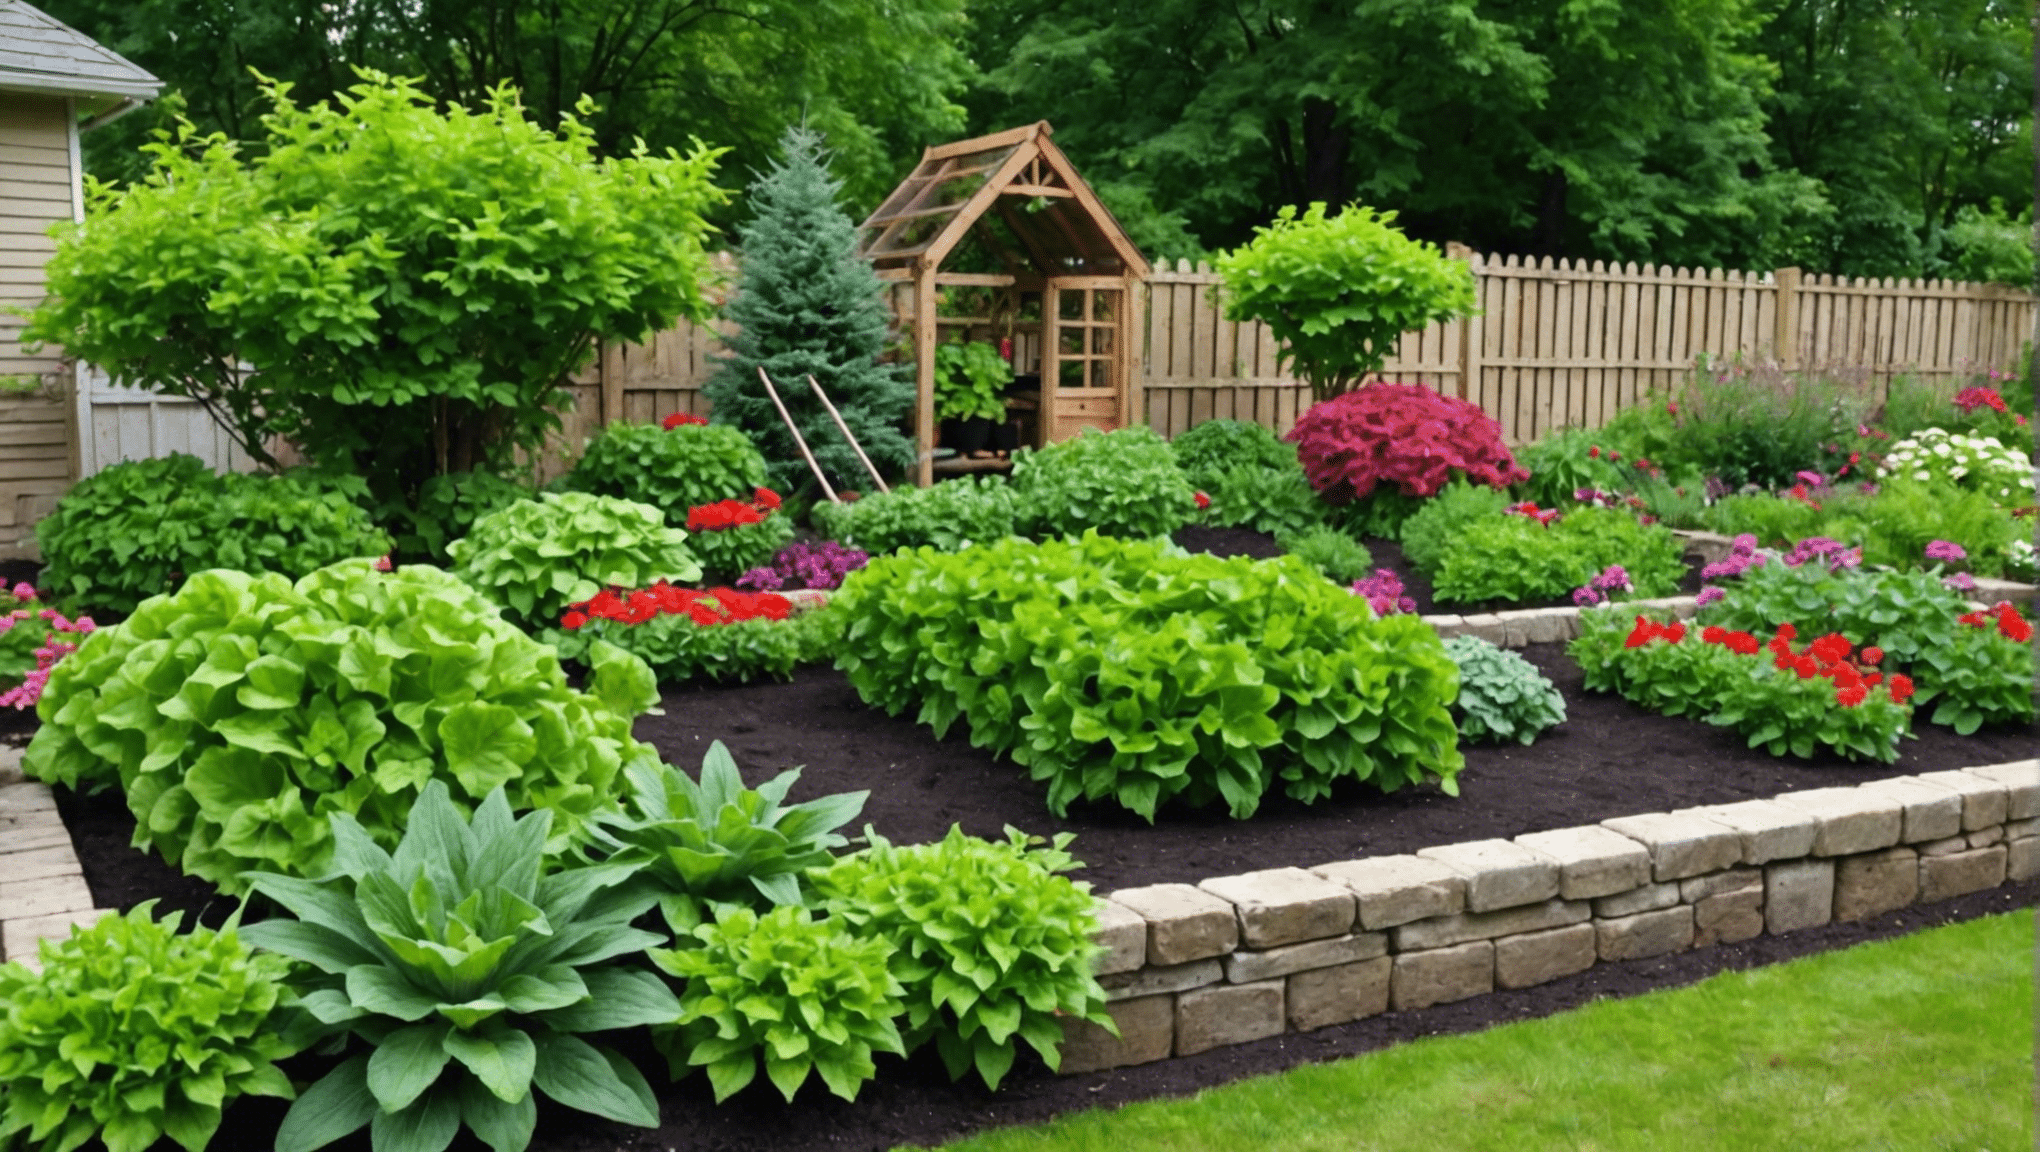 scopri consigli pratici ed economici per l'orto nel tuo spazio con le nostre idee di giardinaggio convenienti. inizia oggi stesso a creare un orto fiorente ed economico.